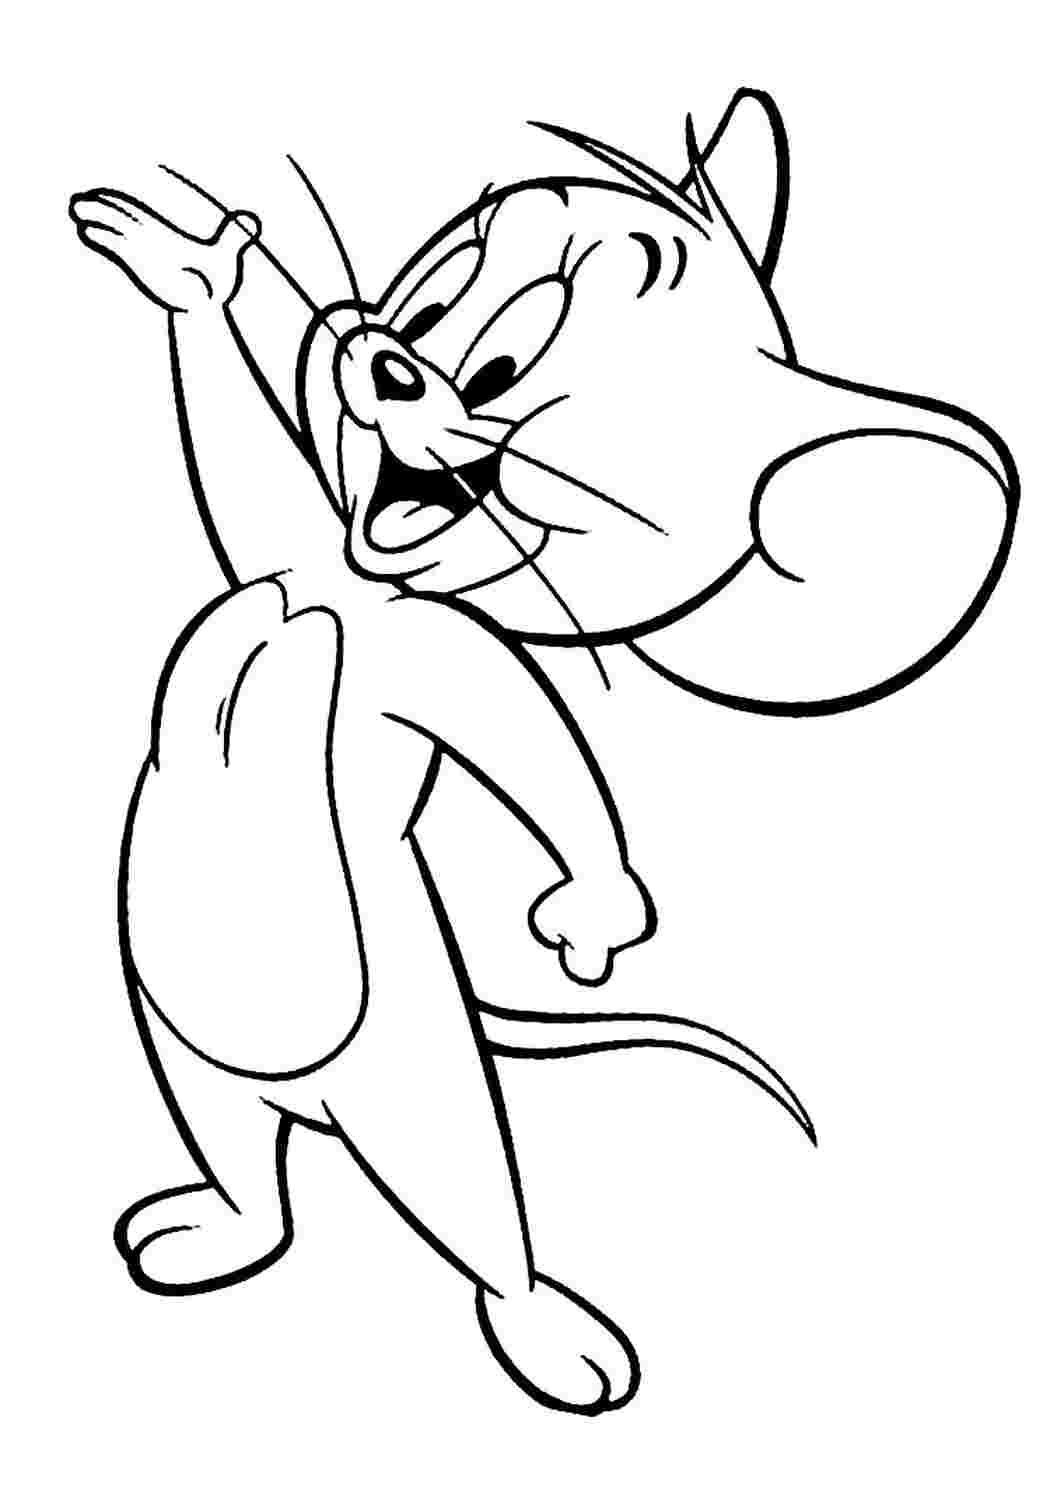 Раскраски из мультфильма Том и Джерри (Tom and Jerry)